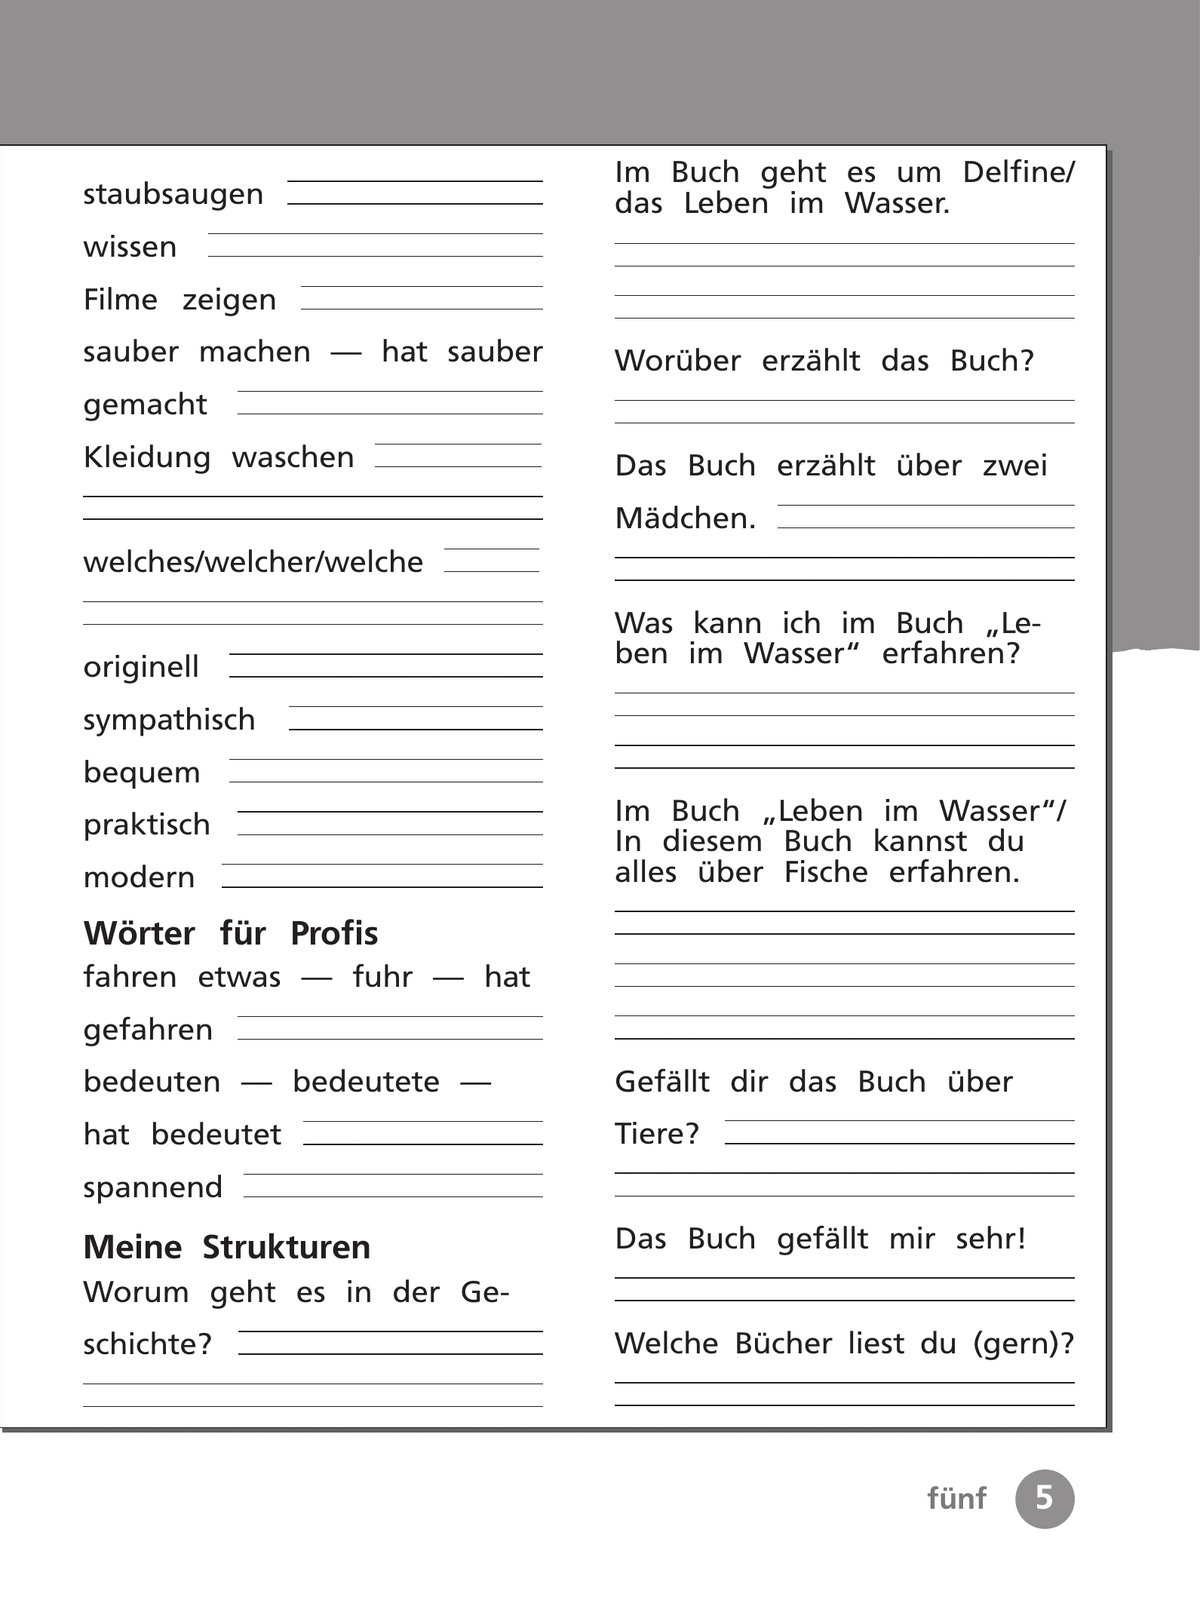 Немецкий язык. Рабочая тетрадь. 4 класс. В 2 ч. Часть 2 7